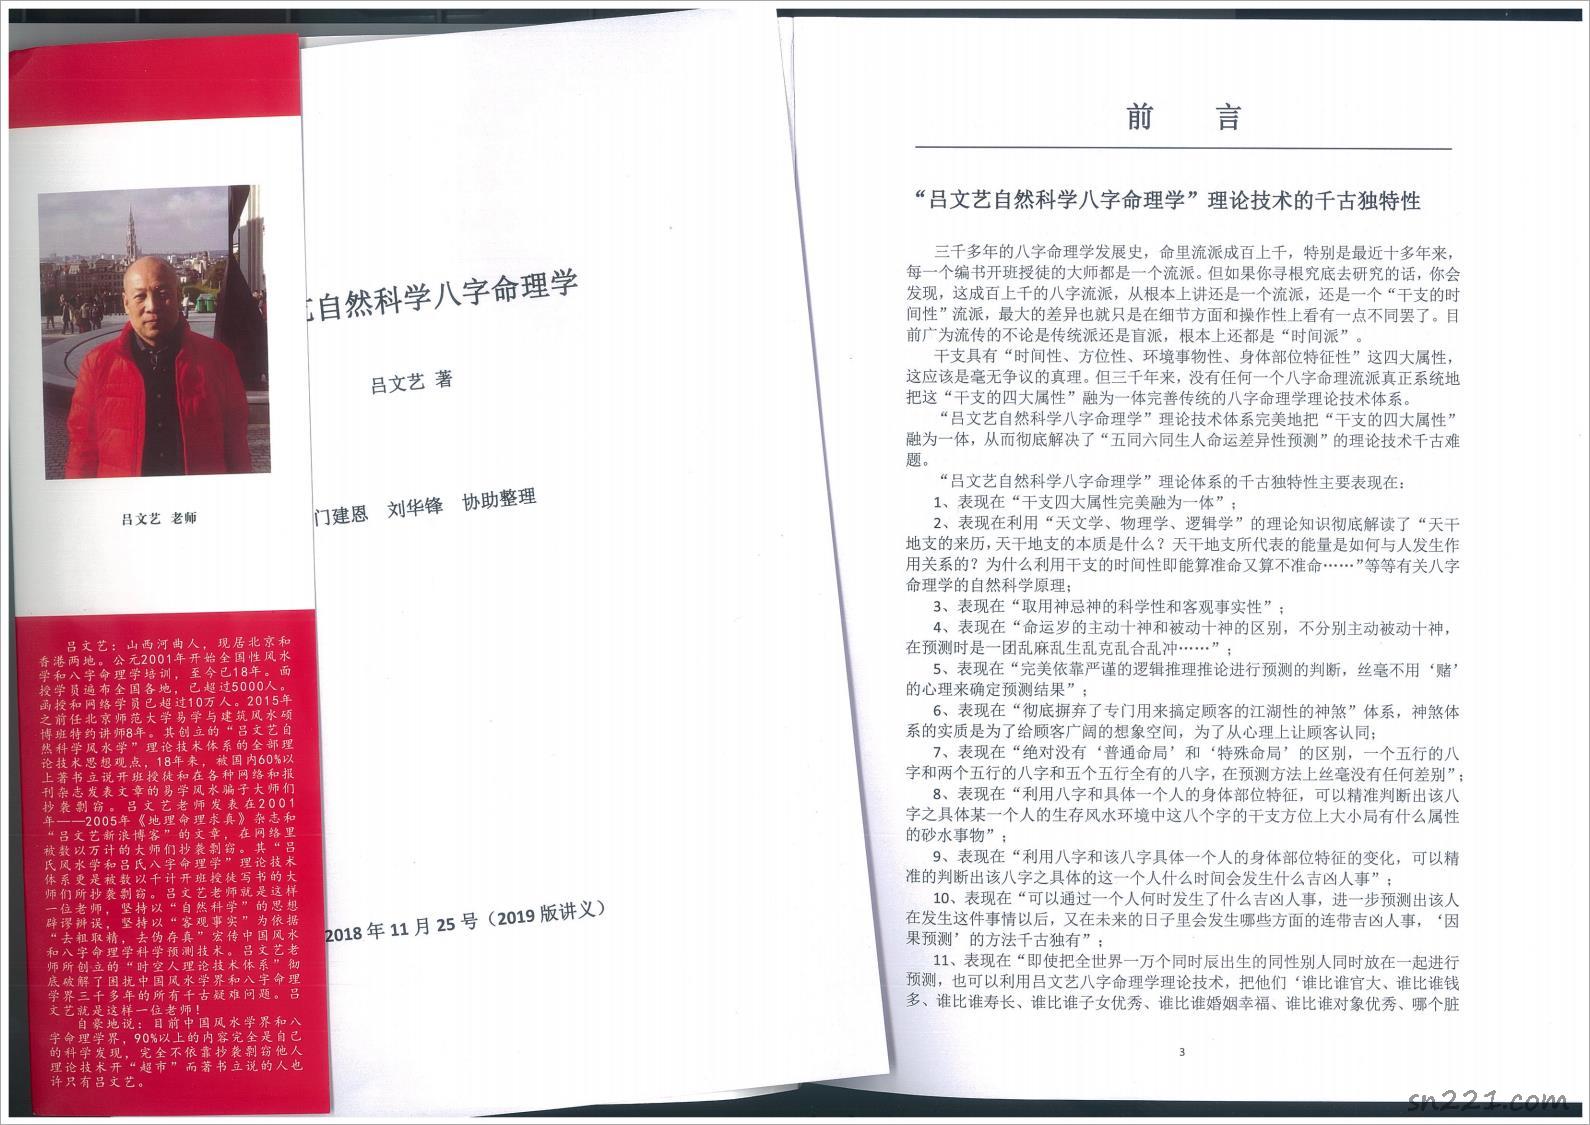 呂文藝自然科學八字命理學-2019版.pdf